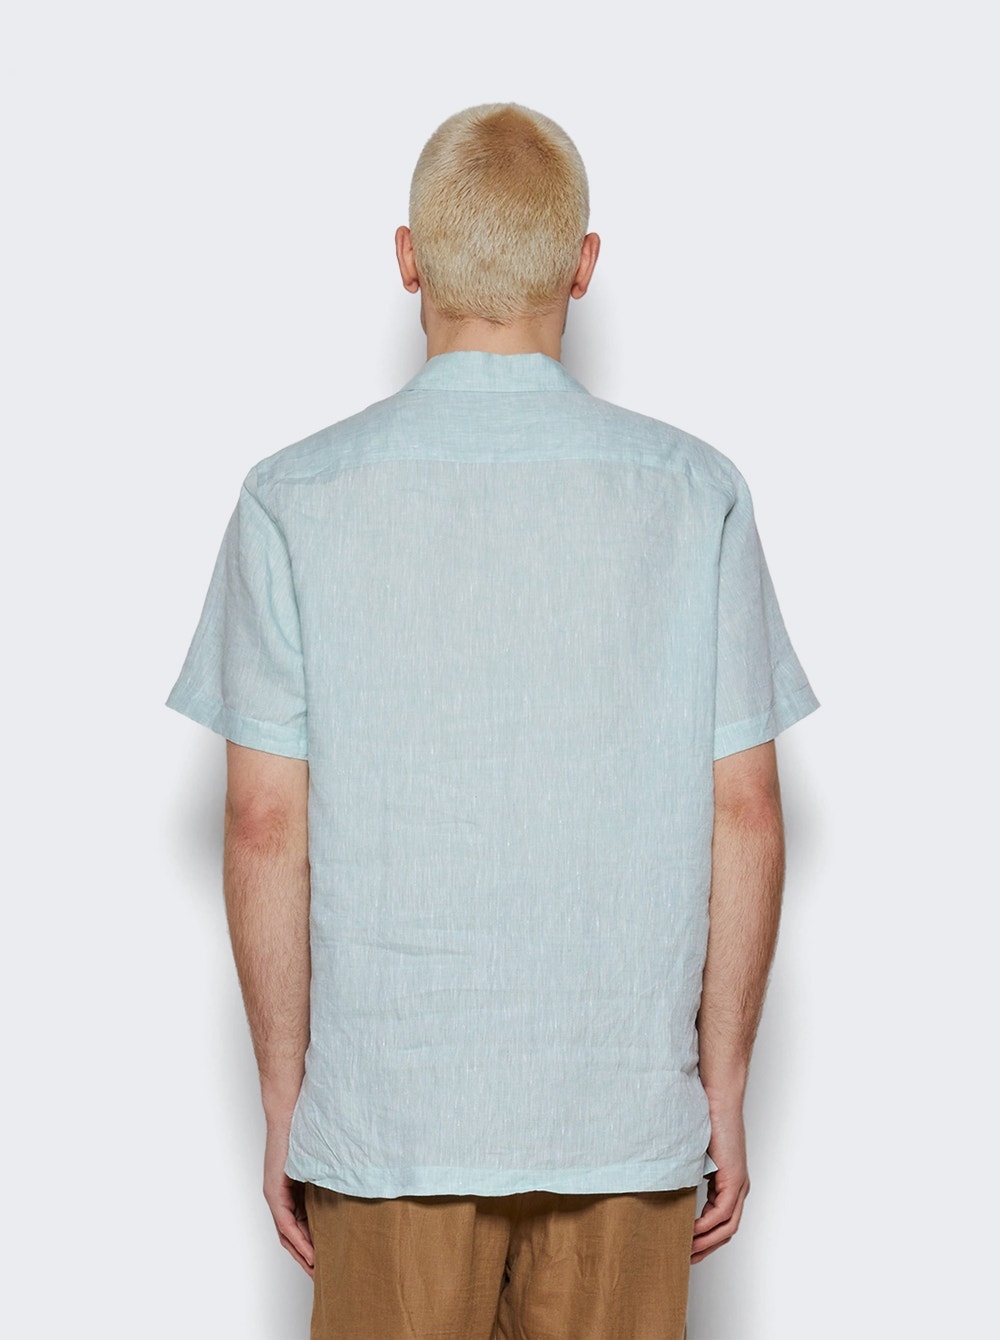 Tindaro Solaire Shirt Transparent Water - 5